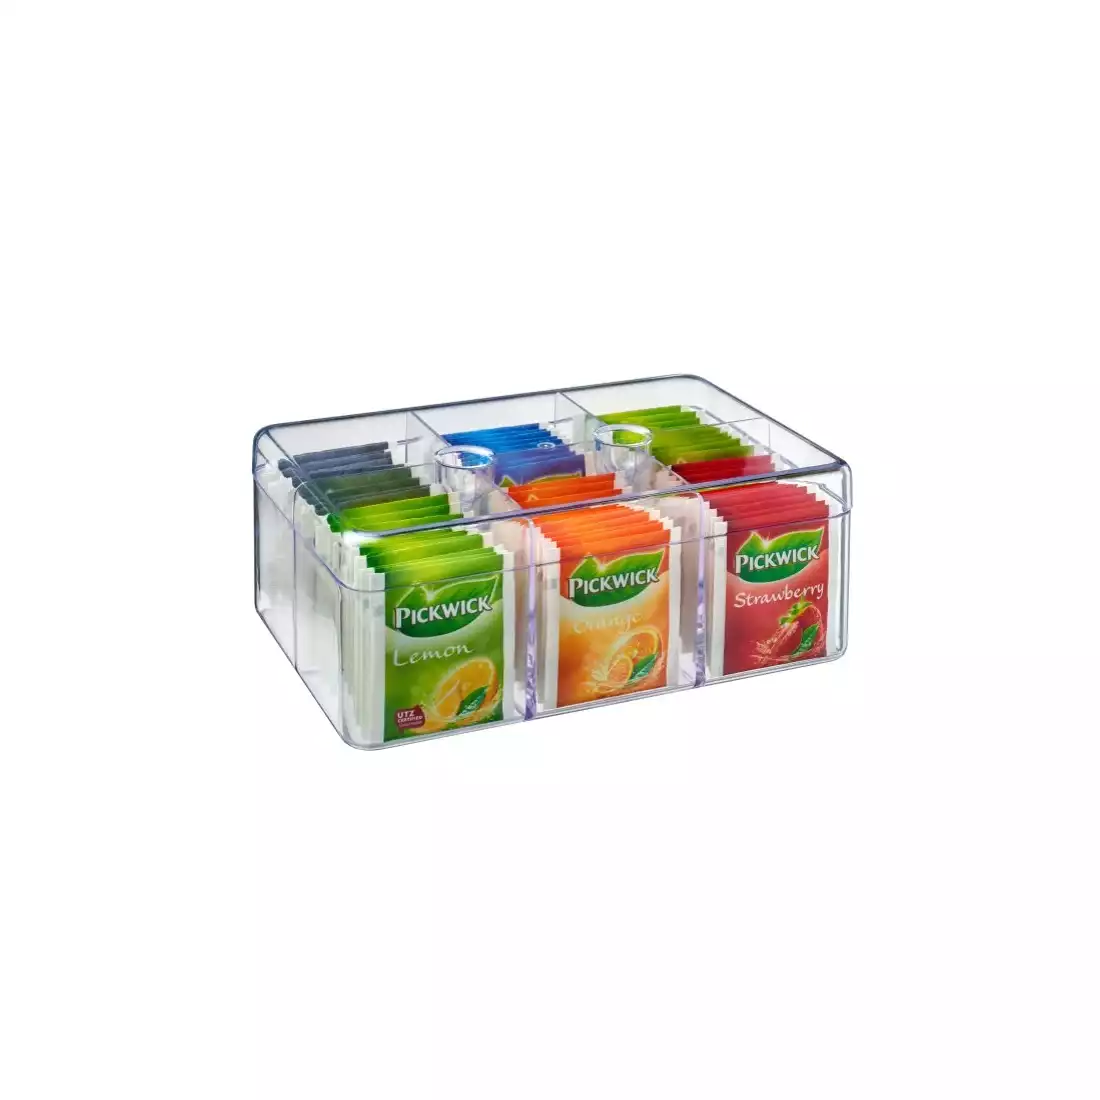 MEPAL tea container, transparent